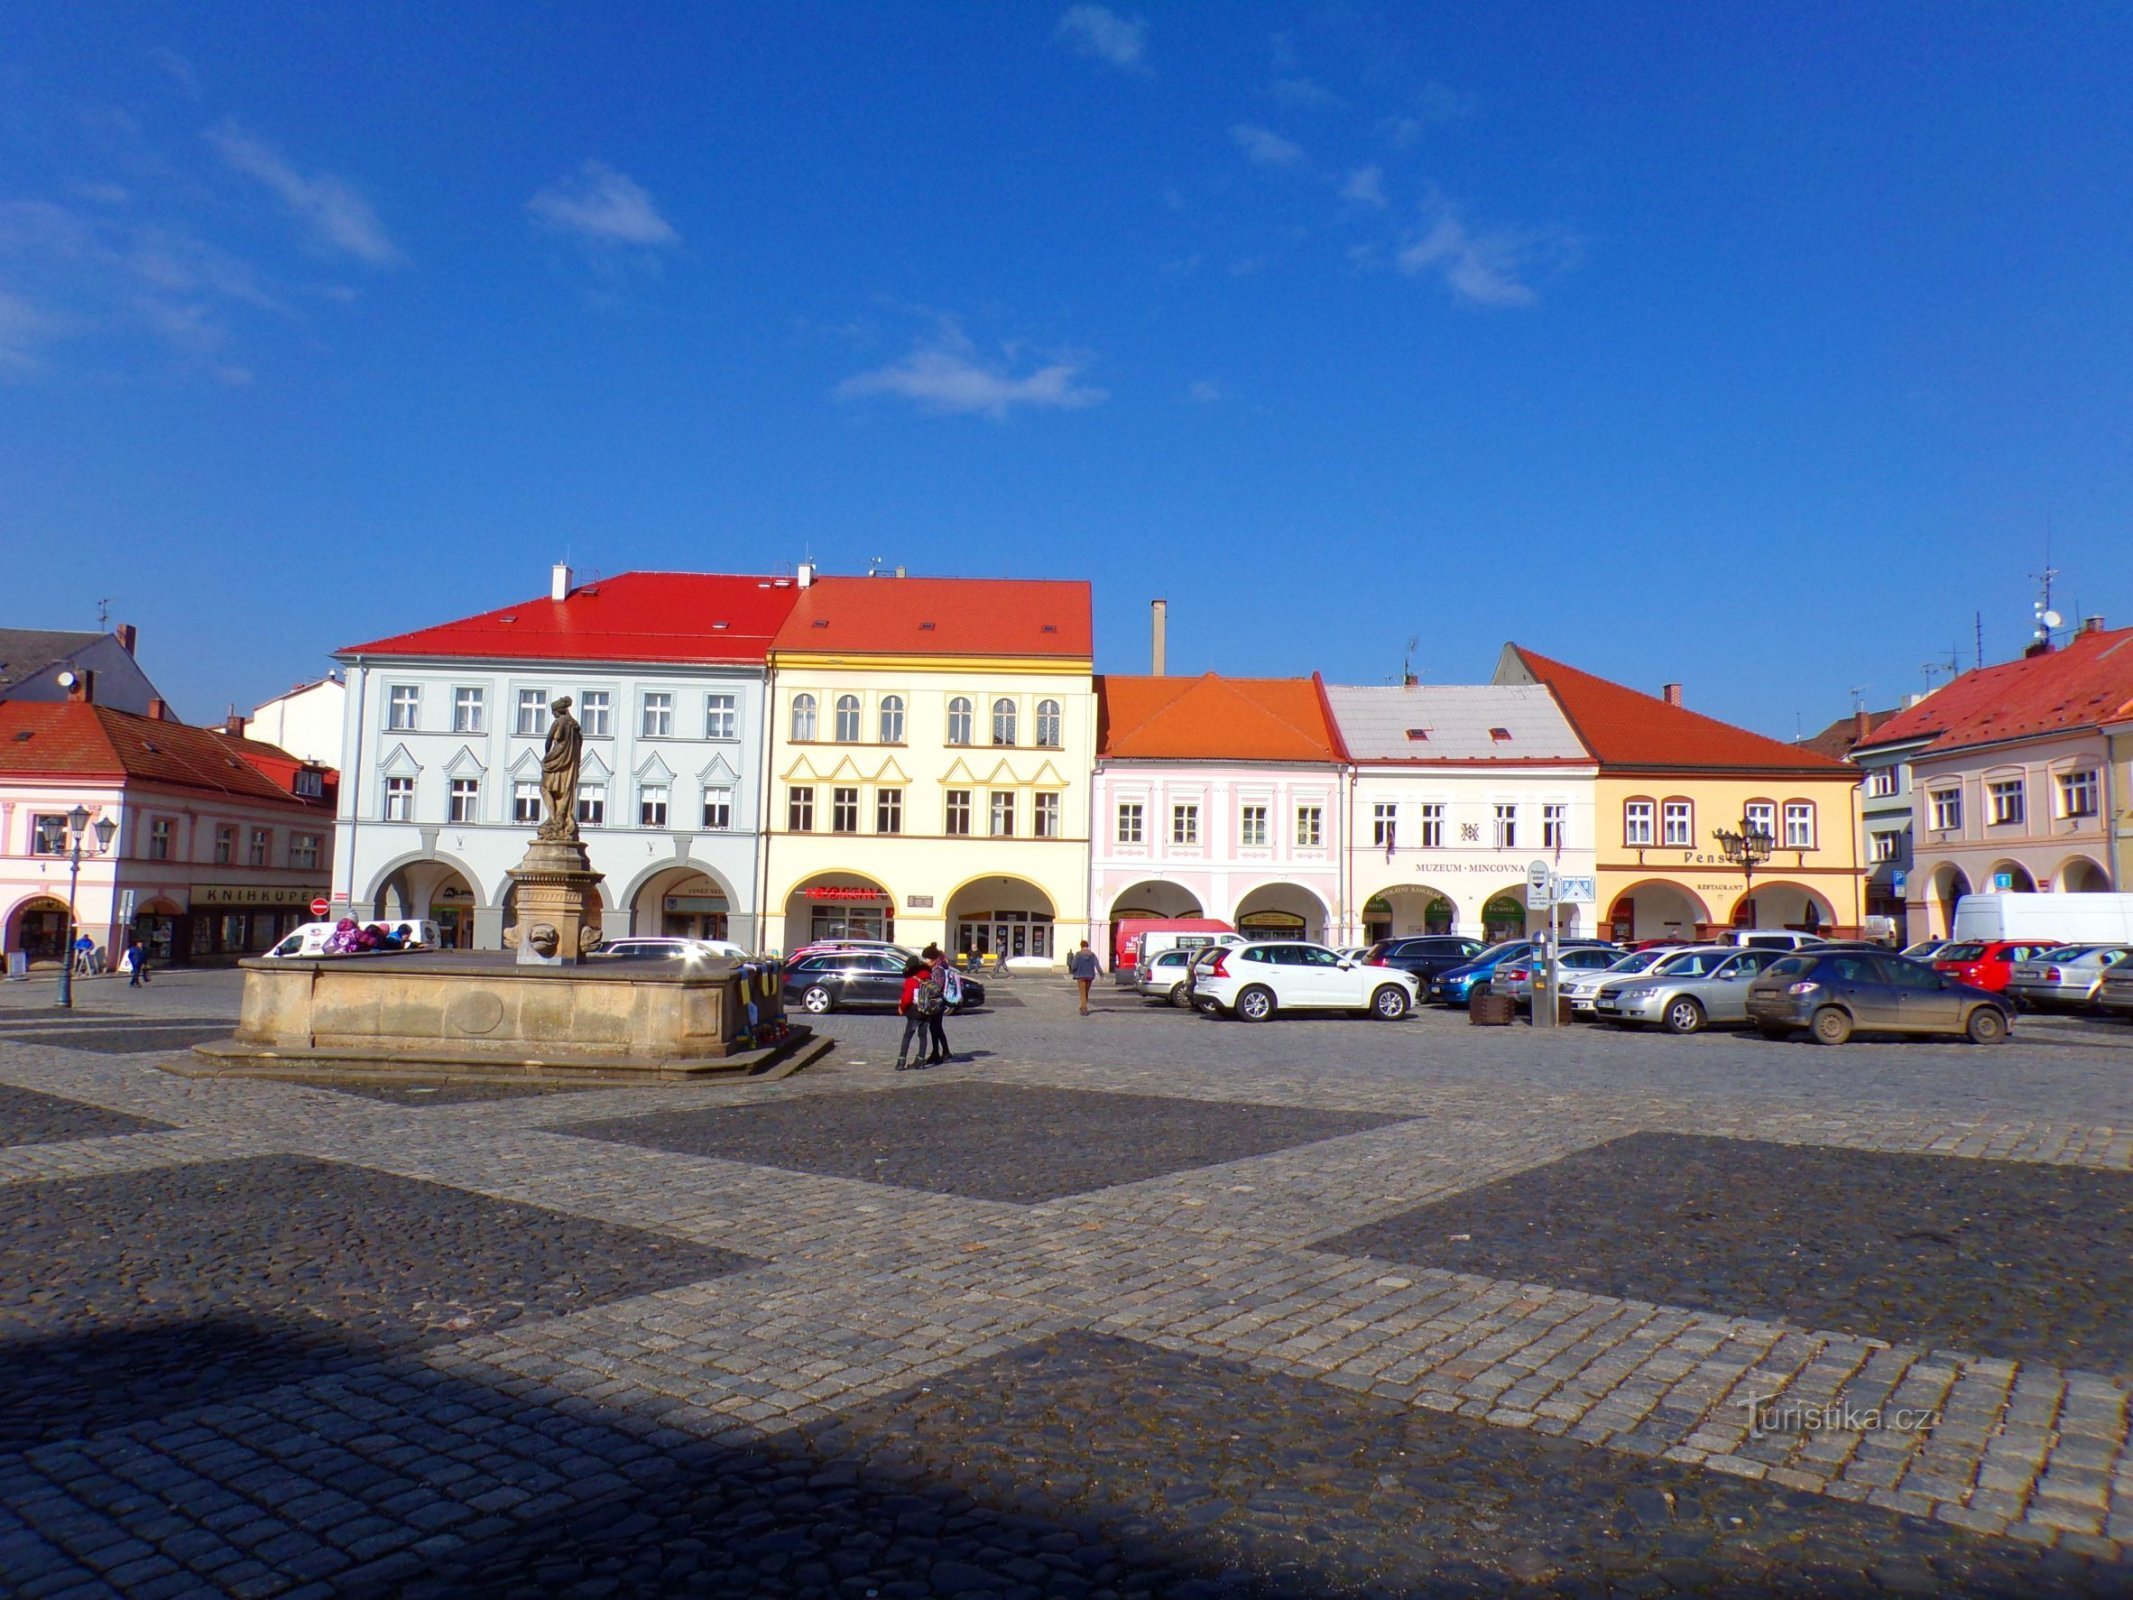 Palackého no. 73 to Valdštejnovo náměstí no. 77 (Jičín, 3.3.2022/XNUMX/XNUMX)